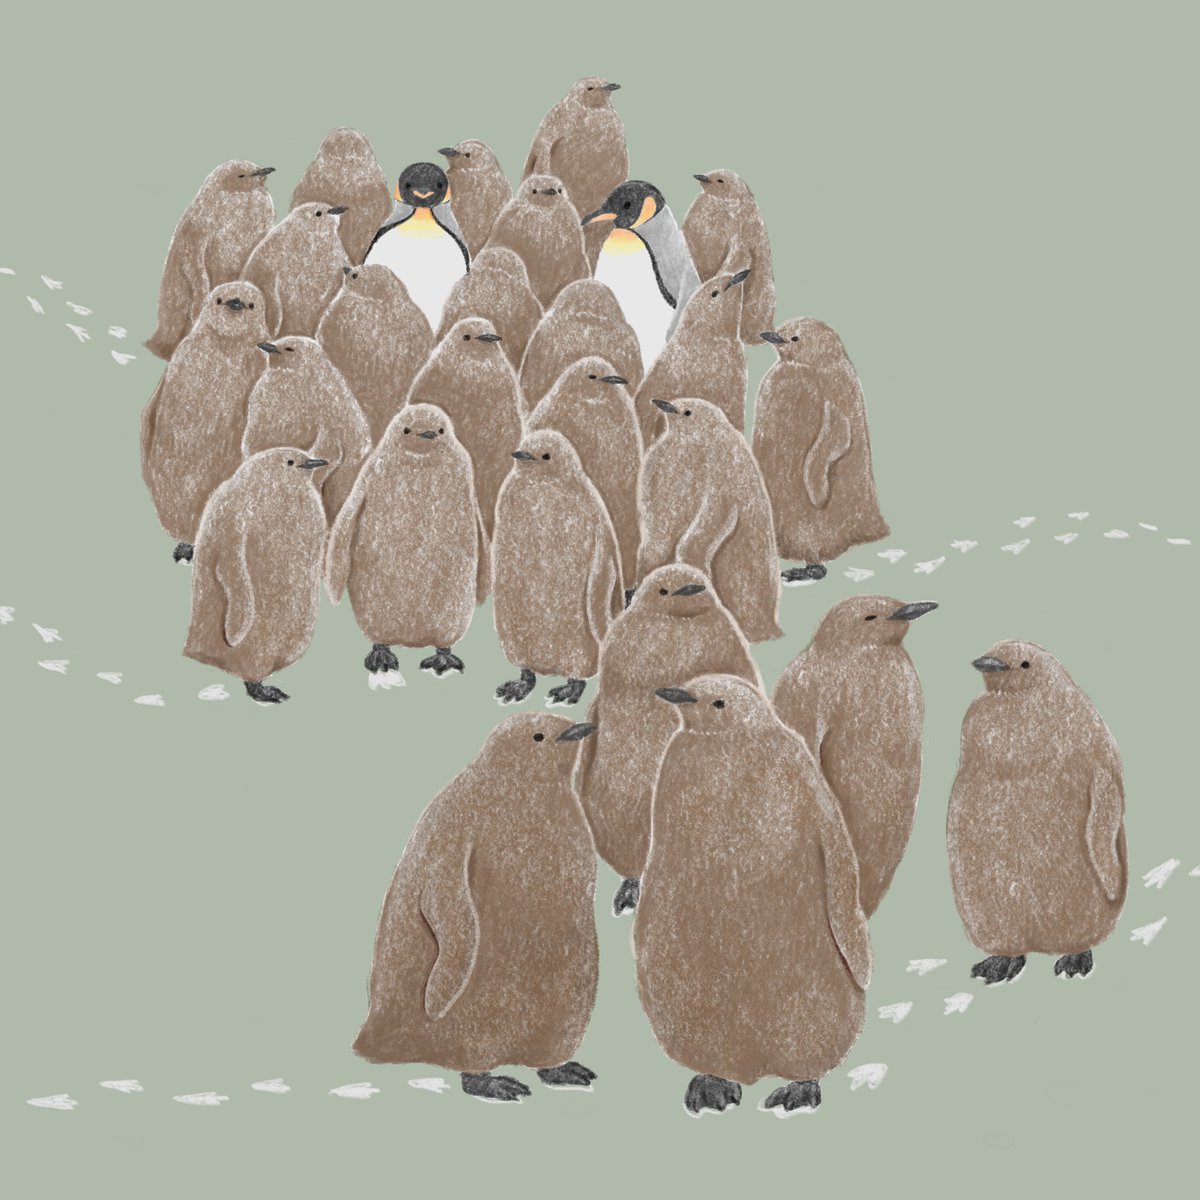 「もふもふわらわら
#キングペンギン 」|きゅう🐧多忙につき低浮上のイラスト